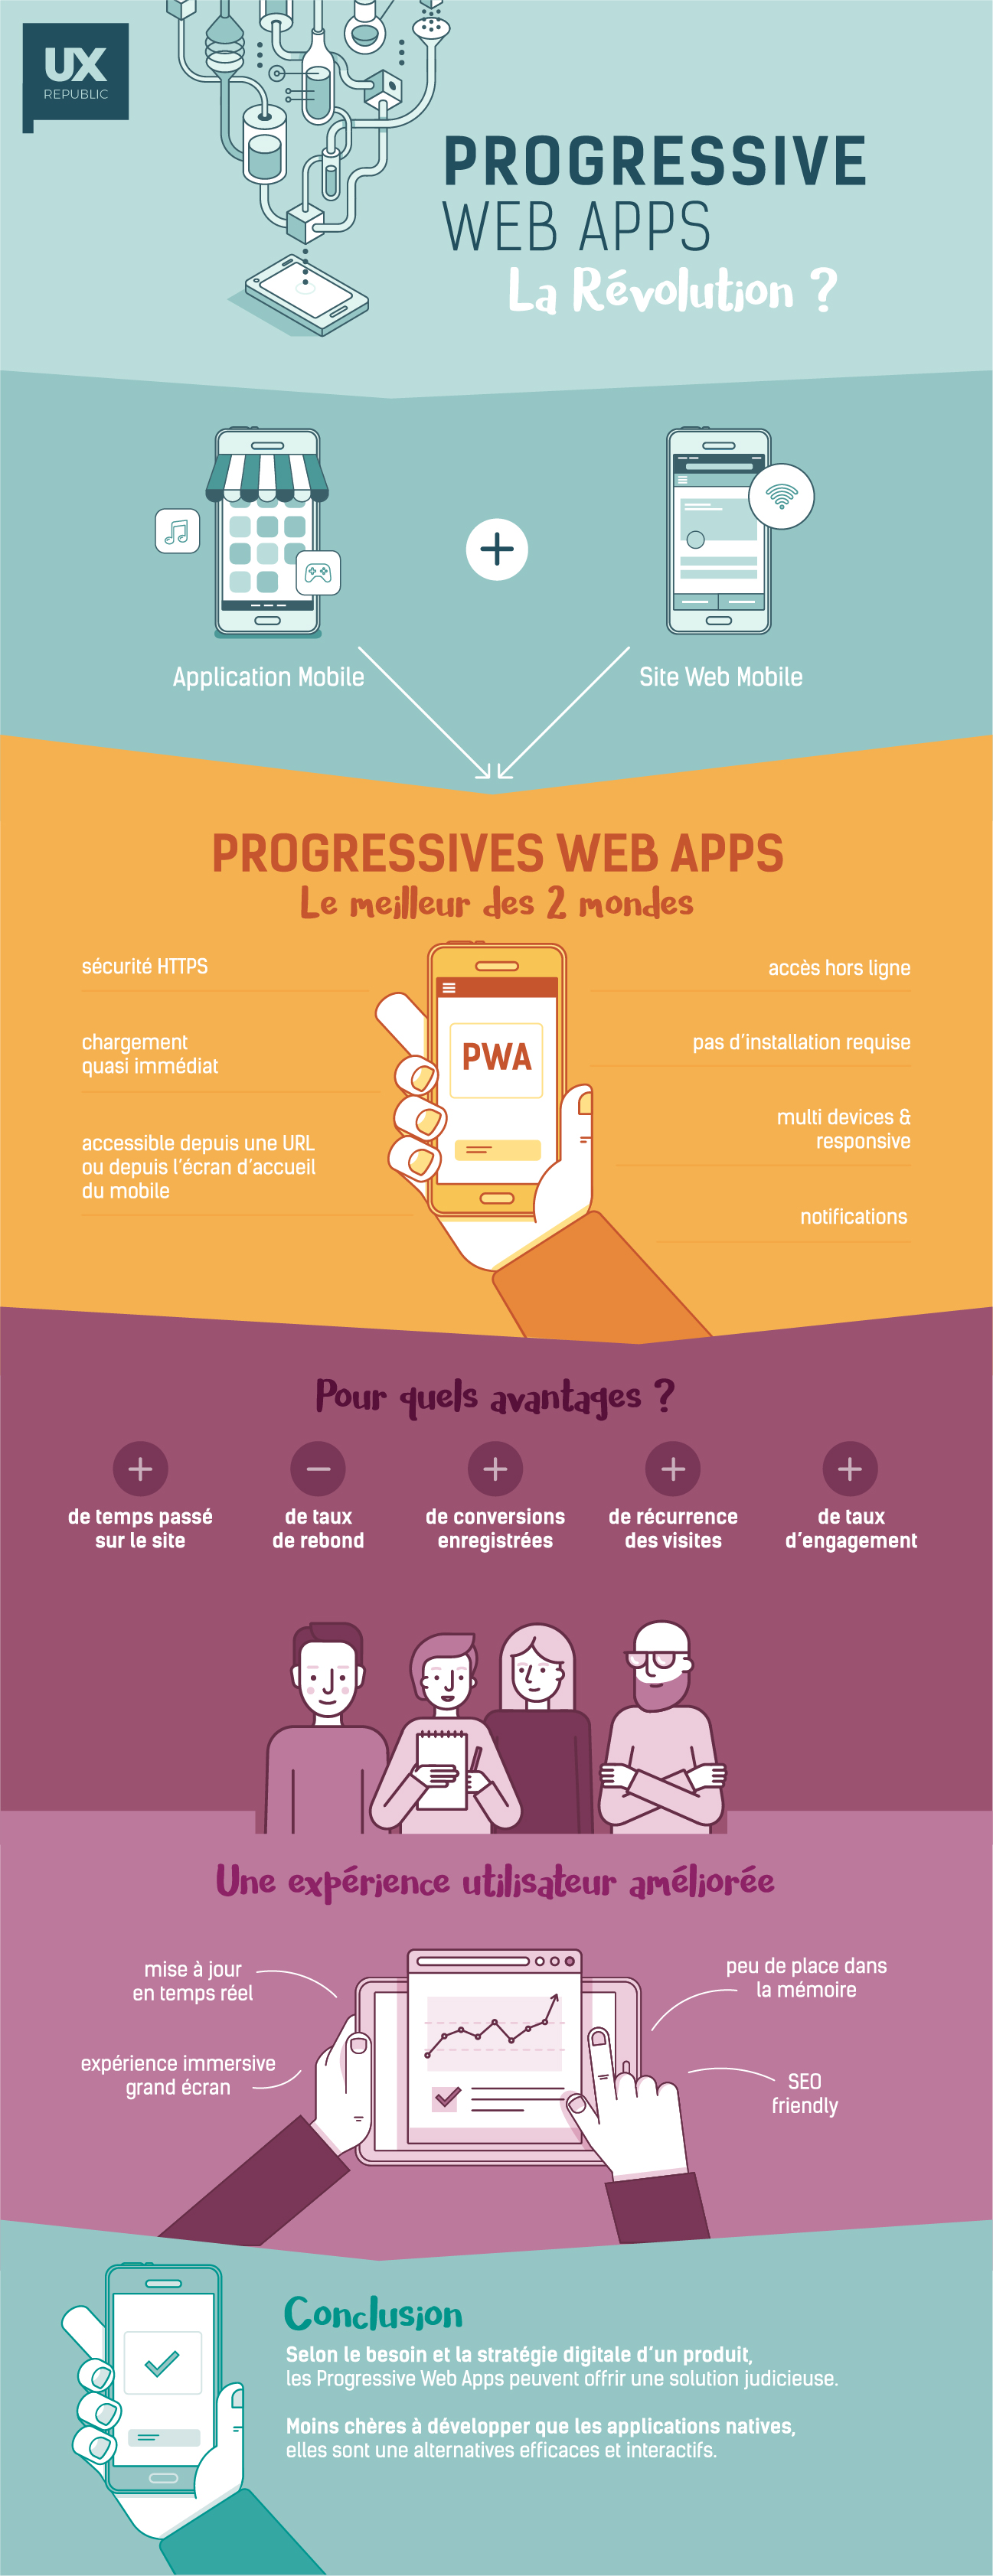 Infográfico de aplicativos web progressivos UX Republic